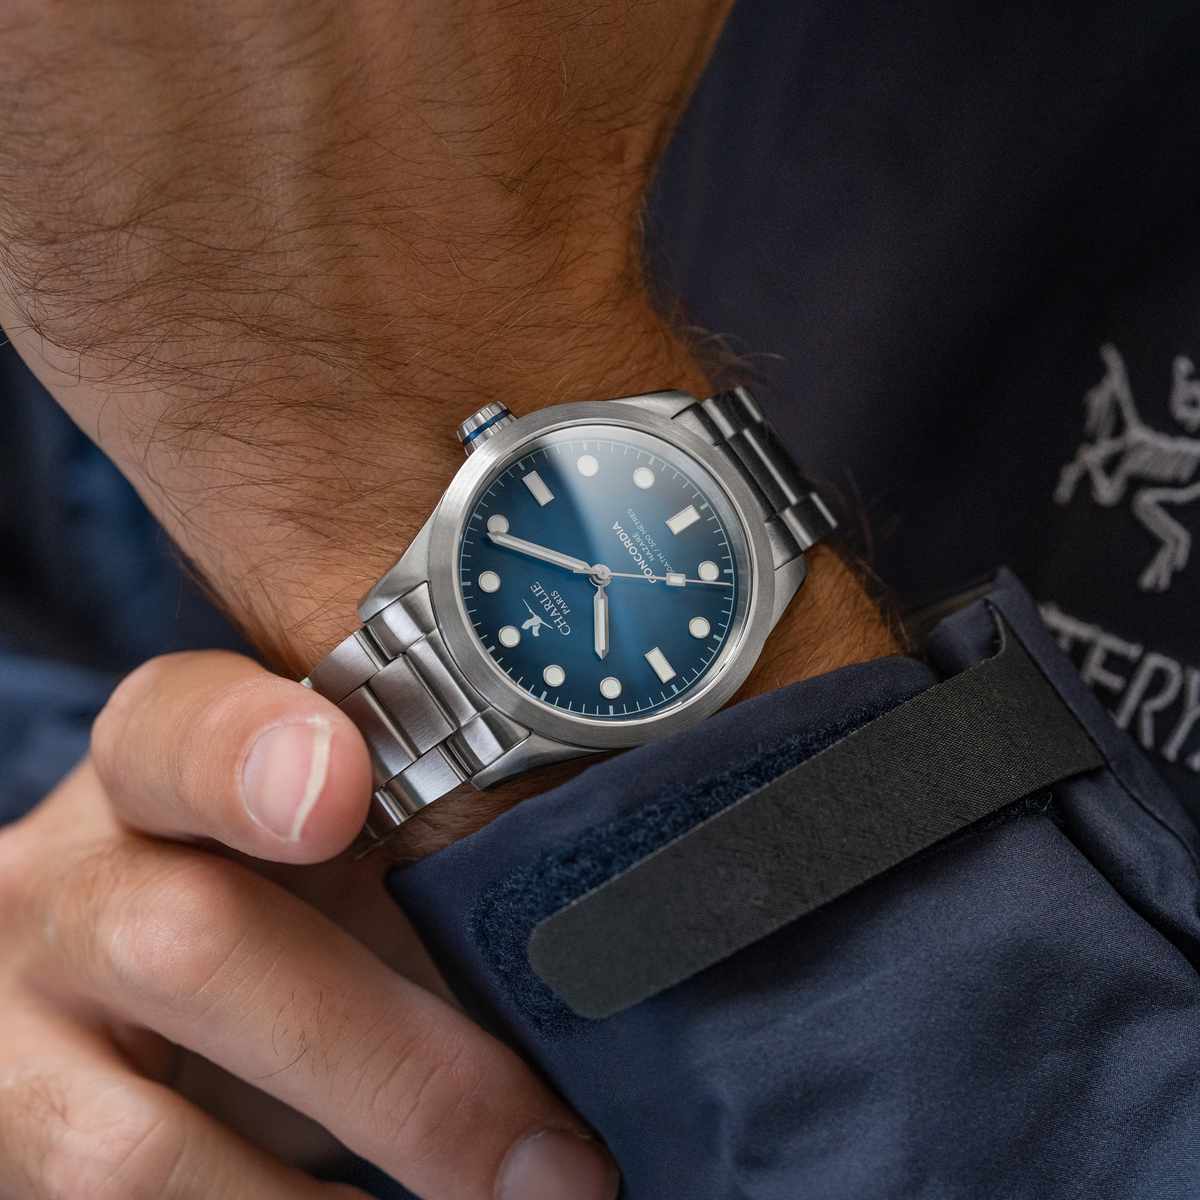 Vue de face du modèle de montre quartz étanche pour homme Concordia Nazaré avec cadran bleu et bracelet acier